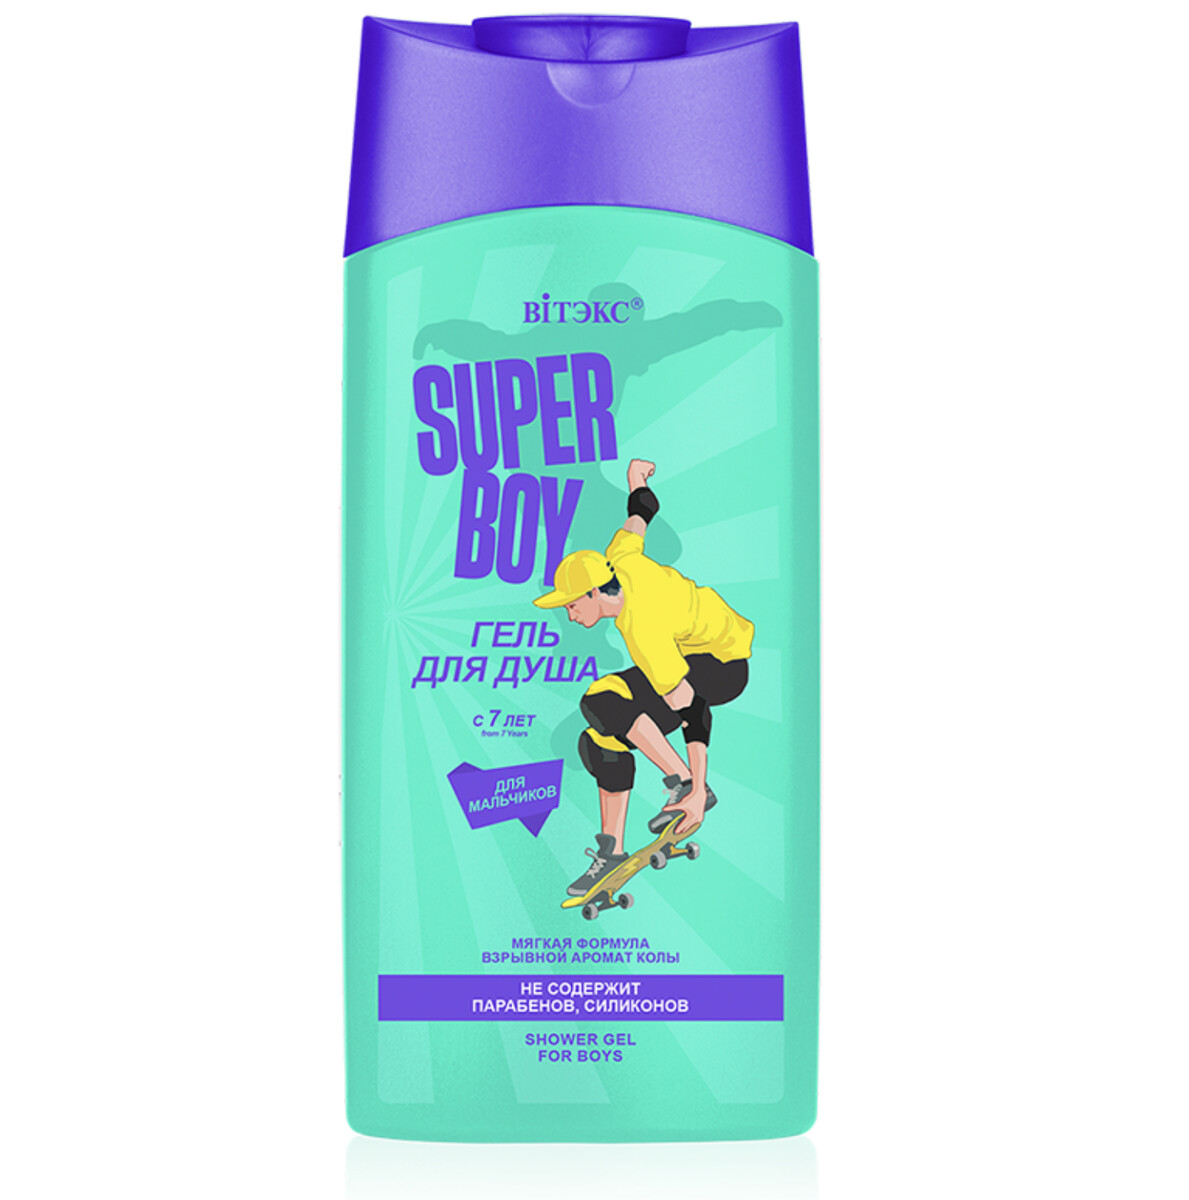 Super boy гель для душа для мальчиков с 7 лет, new 275мл super fruit гель для душа супер кокос 450мл